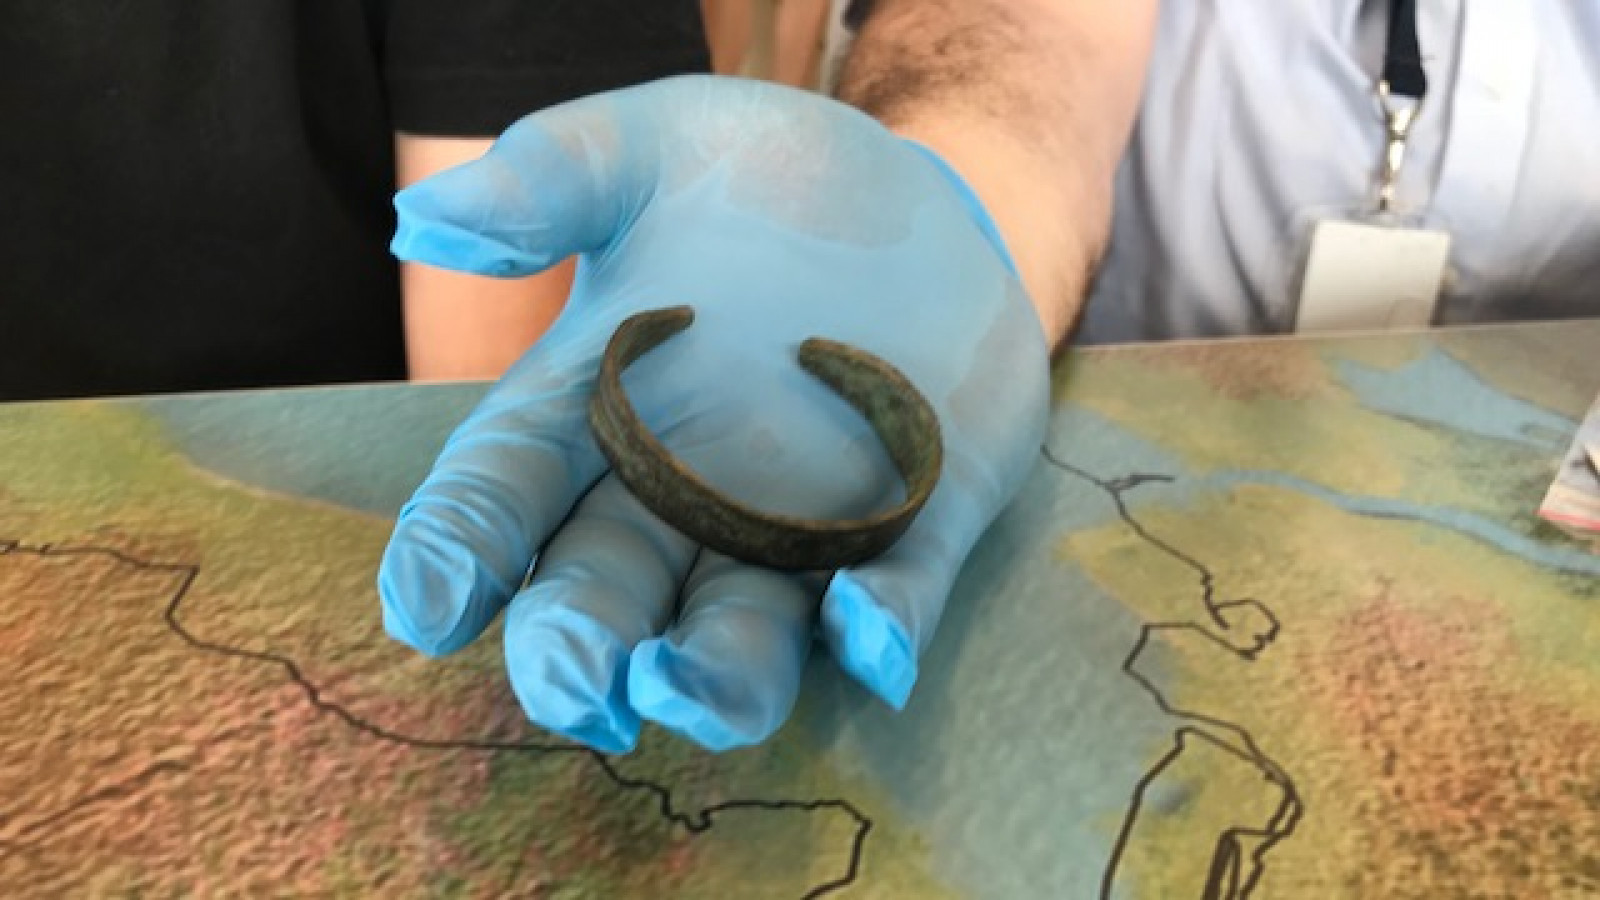 Romeinse armband aan museum overgedragen 2